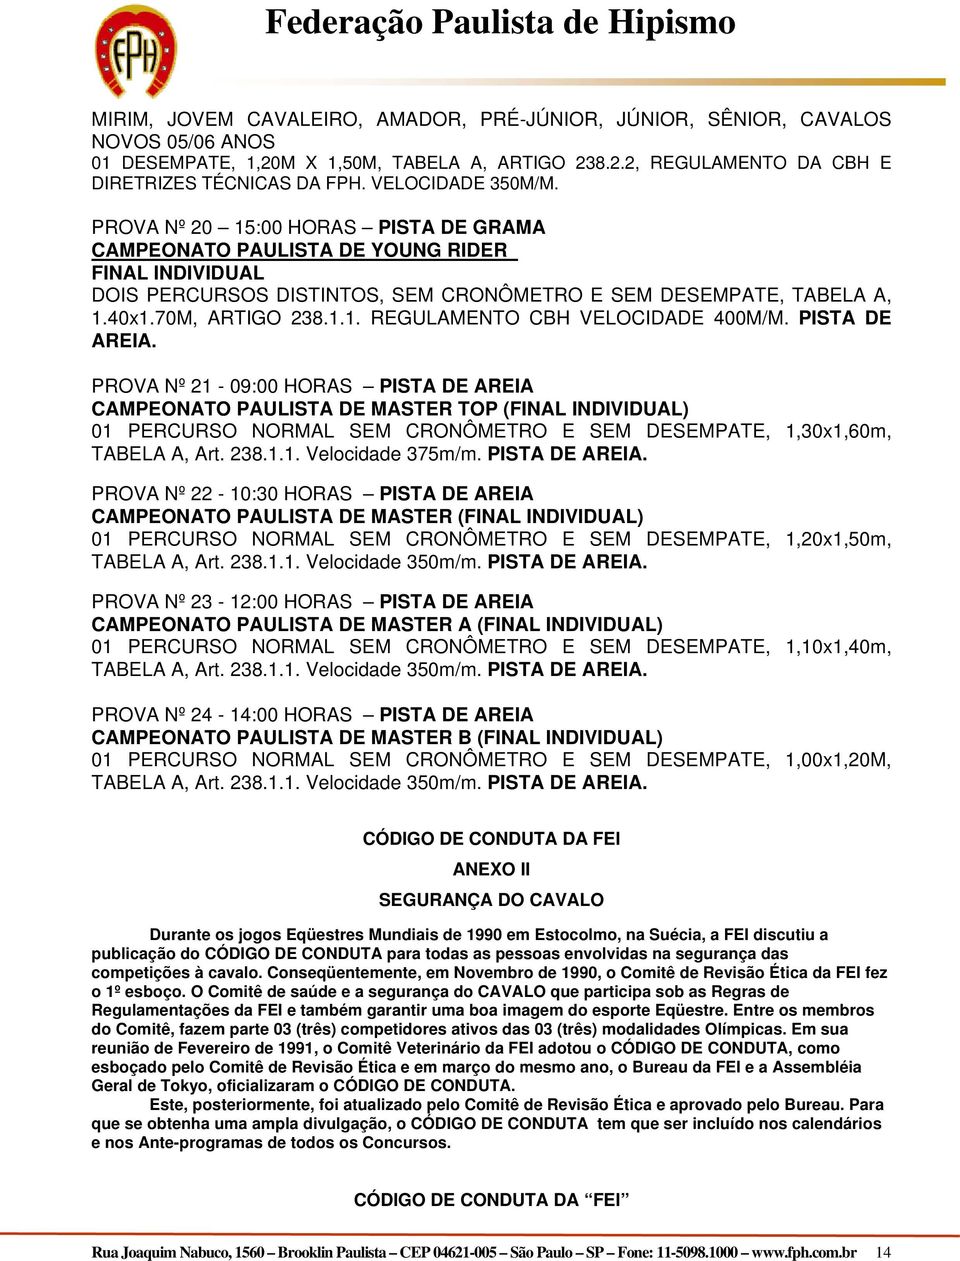 PISTA DE. PROVA Nº 21-09:00 HORAS PISTA DE CAMPEONATO PAULISTA DE MASTER TOP (FINAL INDIVIDUAL) 01 PERCURSO NORMAL SEM CRONÔMETRO E SEM DESEMPATE, 1,30x1,60m, TABELA A, Art. 238.1.1. Velocidade 375m/m.